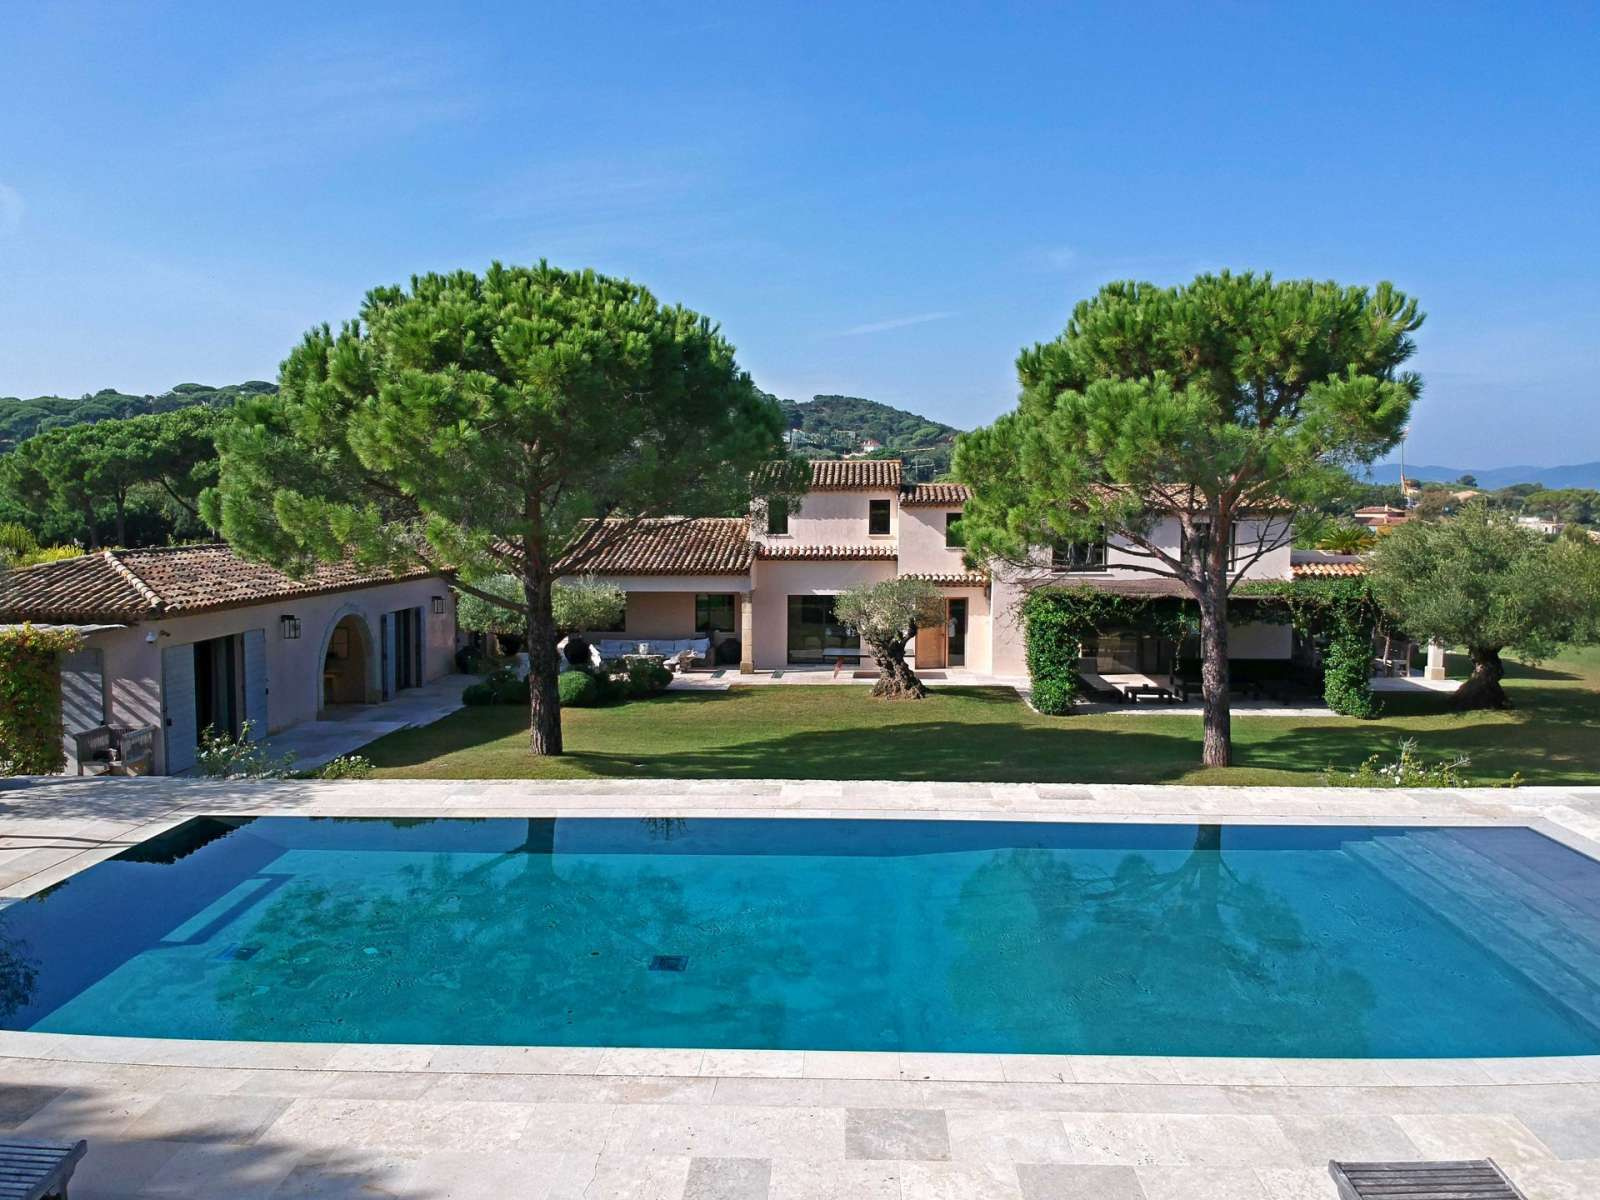 Villa moderne aux prestations luxueuses à louer à Saint-Tropez